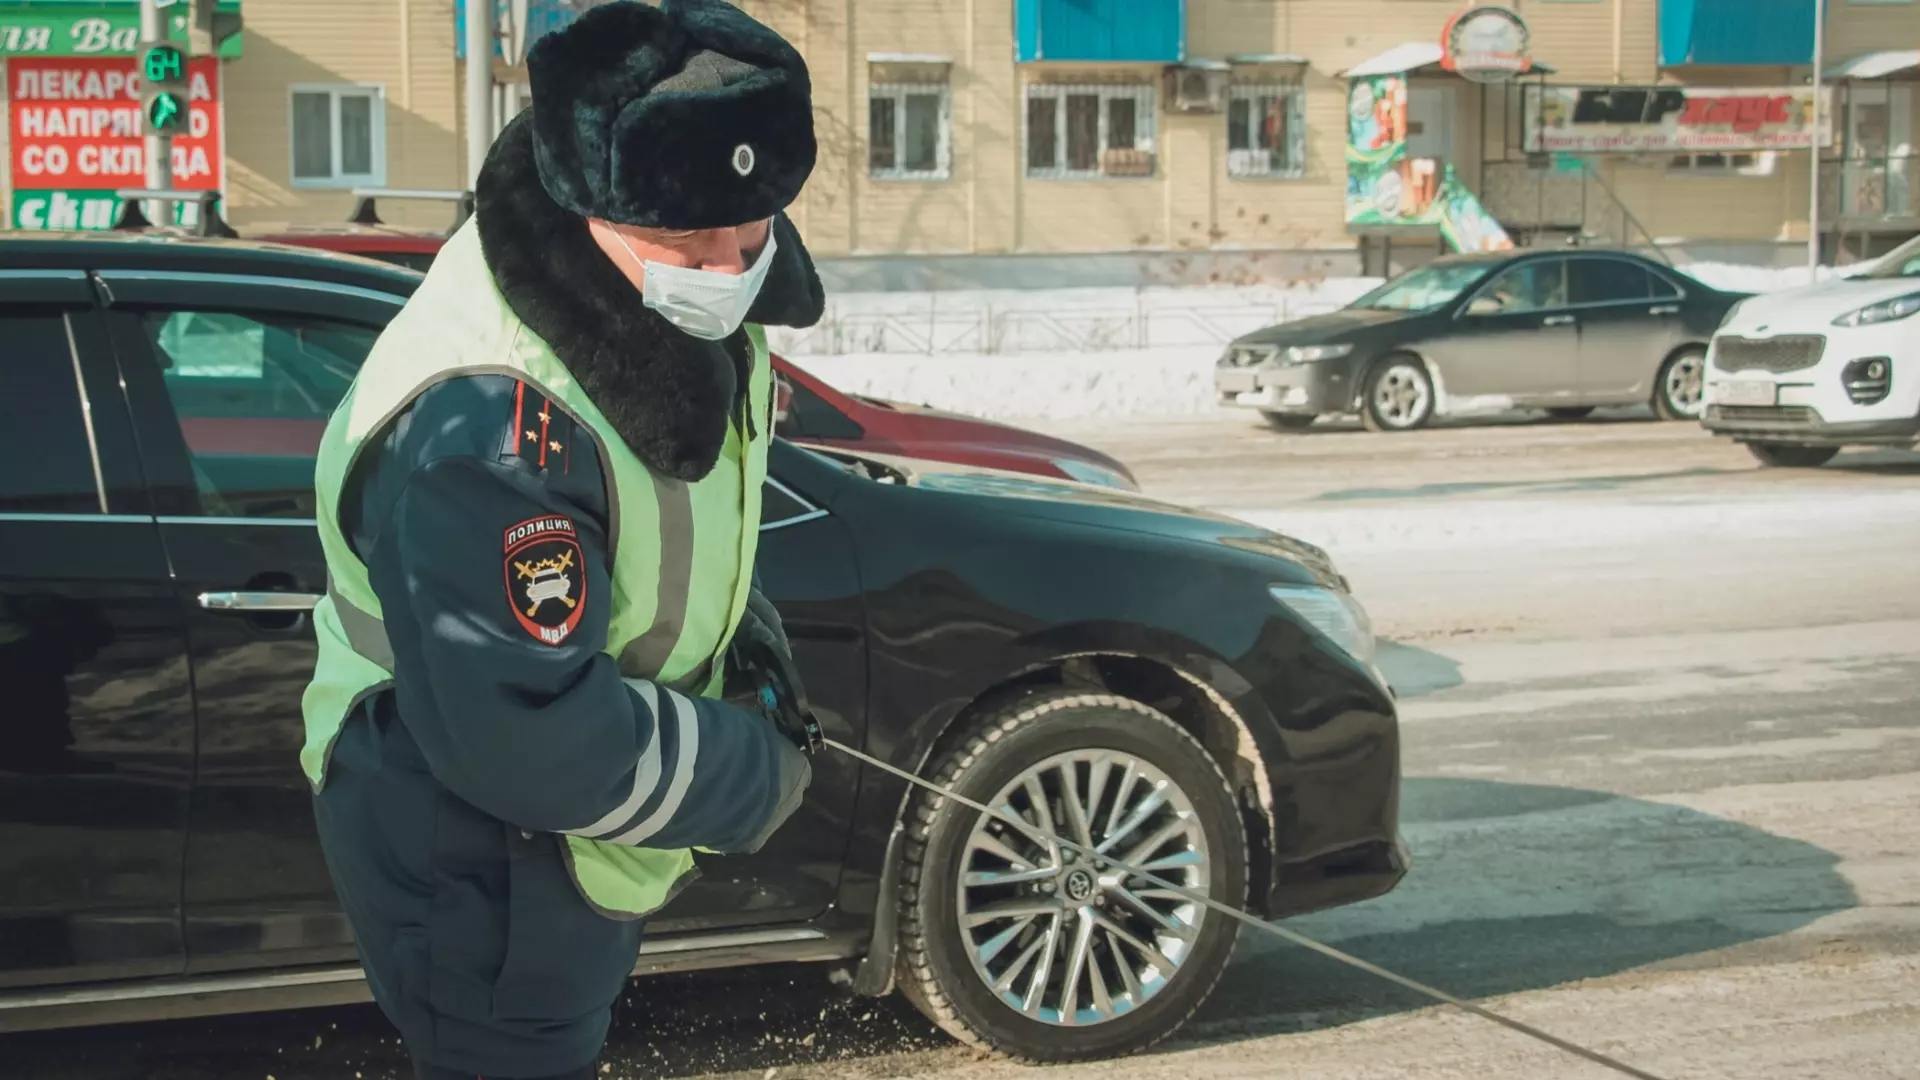 ДТП с пятью автомобилями случилось в Советском районе Челябинска. Есть пострадавшие